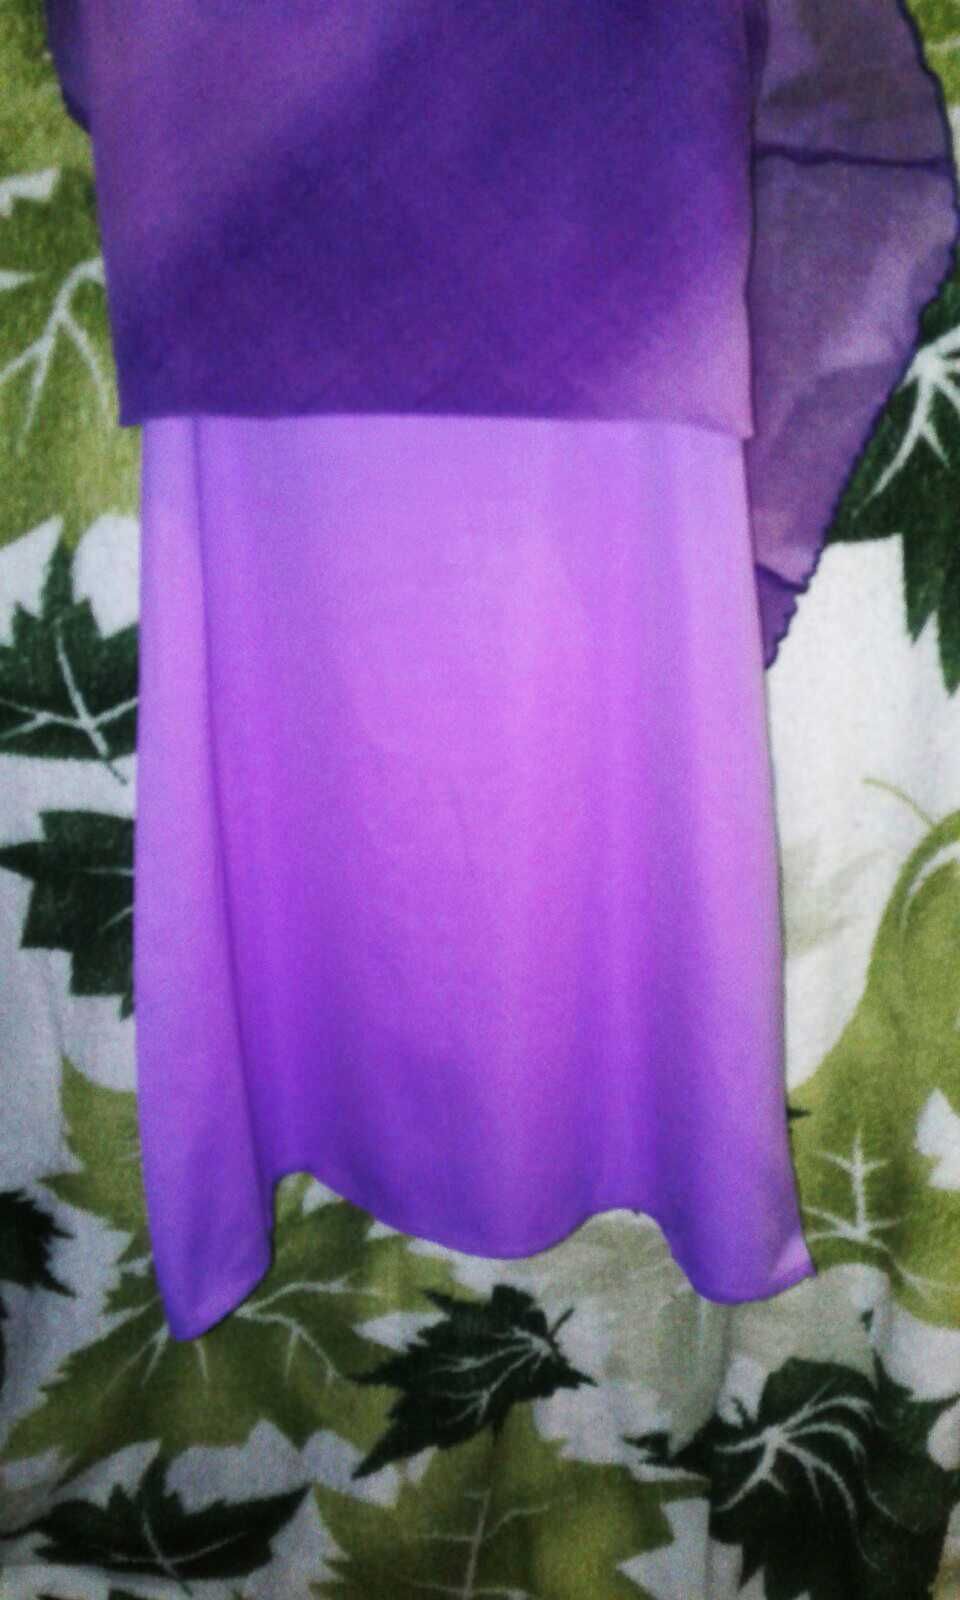 Нежное фиолетовое платье фея принцеса нарядное шлейф подросток сарафан